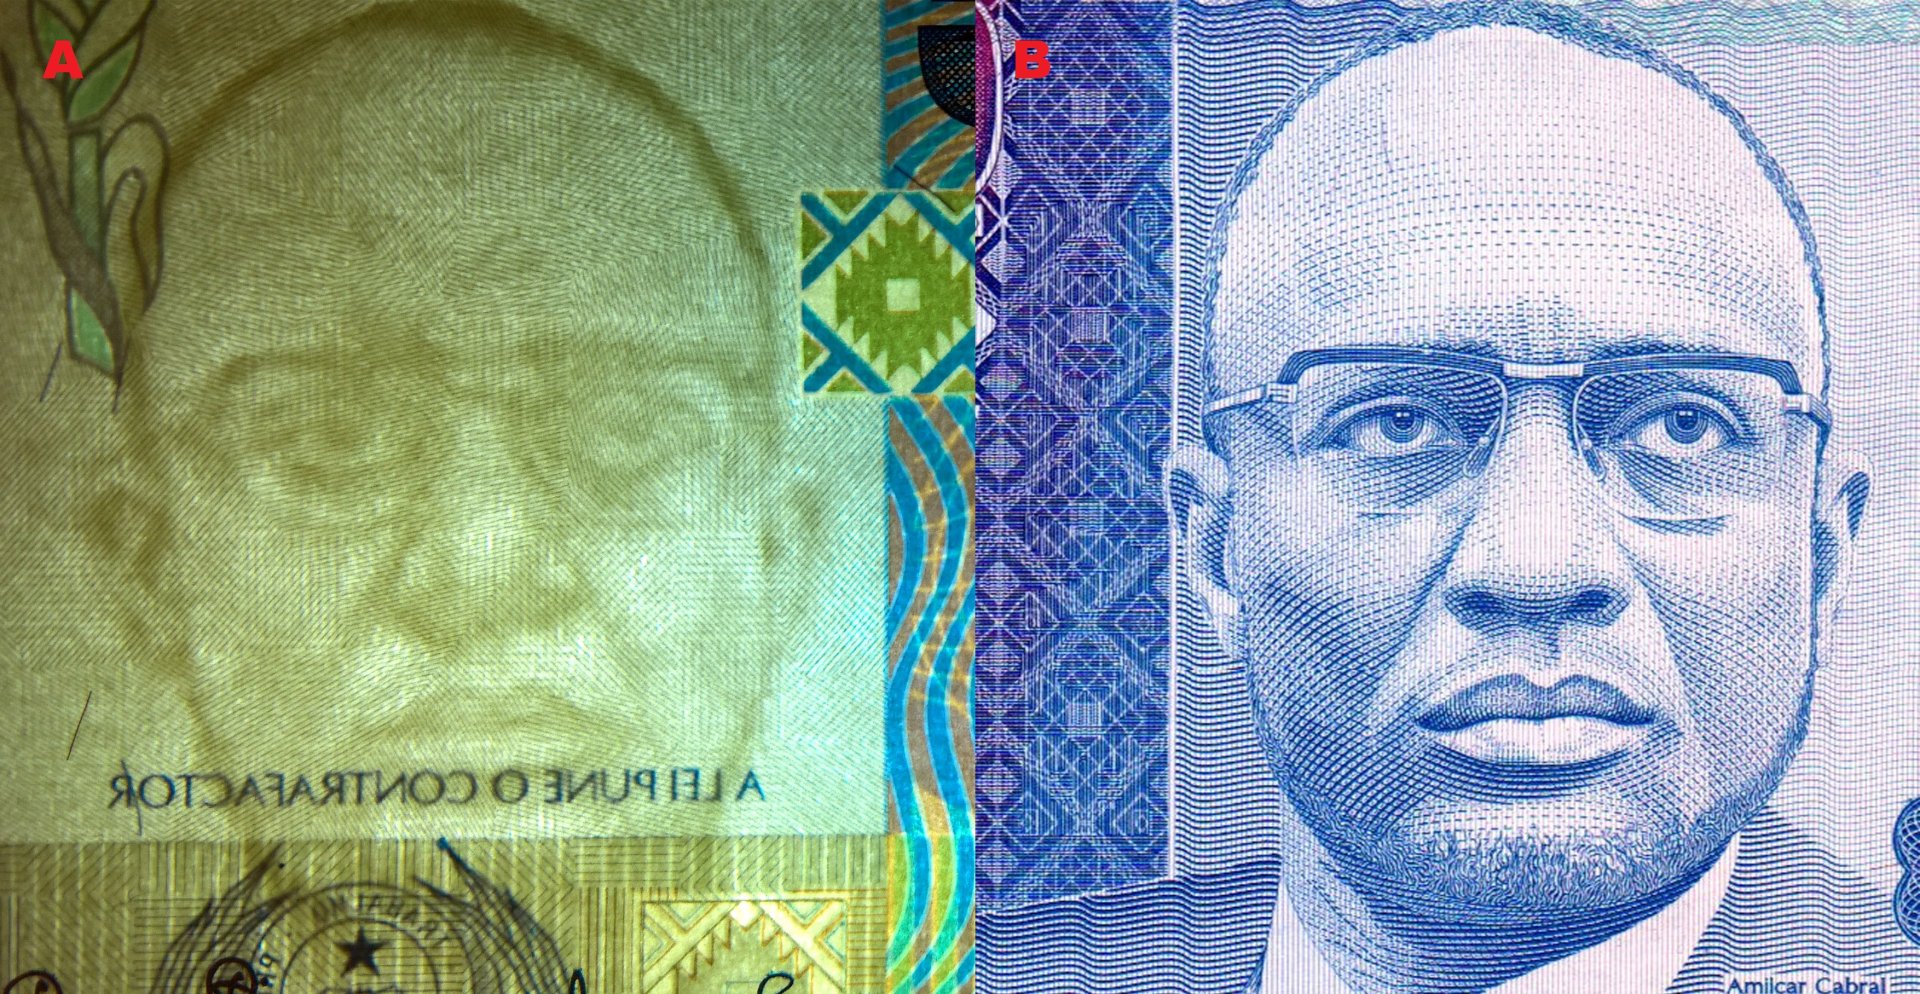 Obr. 2. A) Souhlasný tmavočarý vodotisk. B) portrét Amílcara Cabrala na bankovce P#59